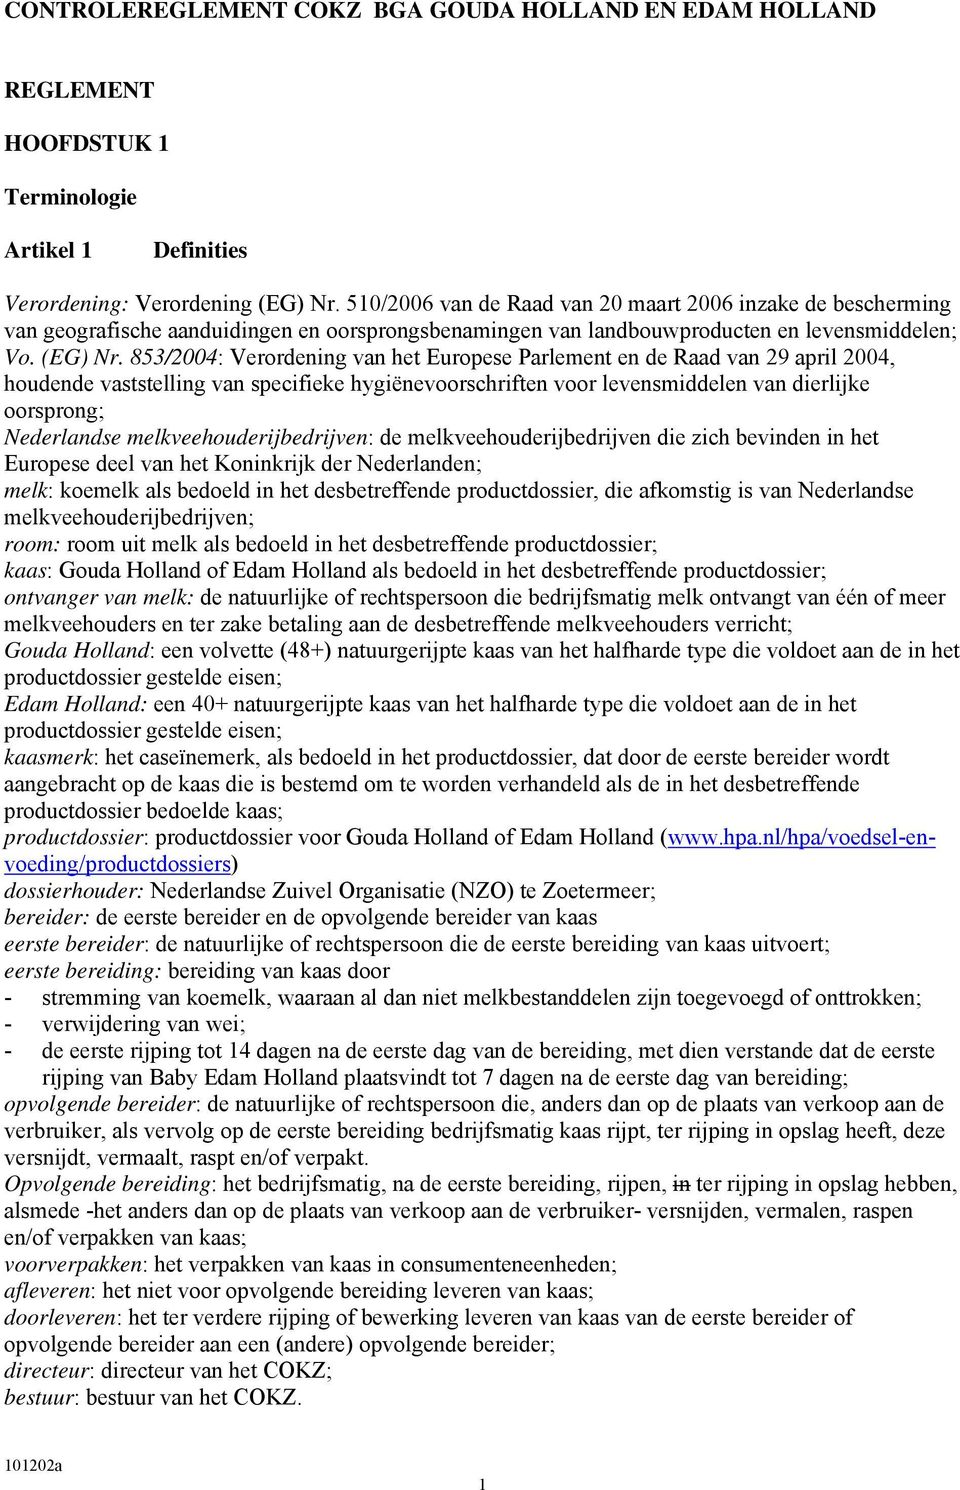 853/2004: Verordening van het Europese Parlement en de Raad van 29 april 2004, houdende vaststelling van specifieke hygiënevoorschriften voor levensmiddelen van dierlijke oorsprong; Nederlandse